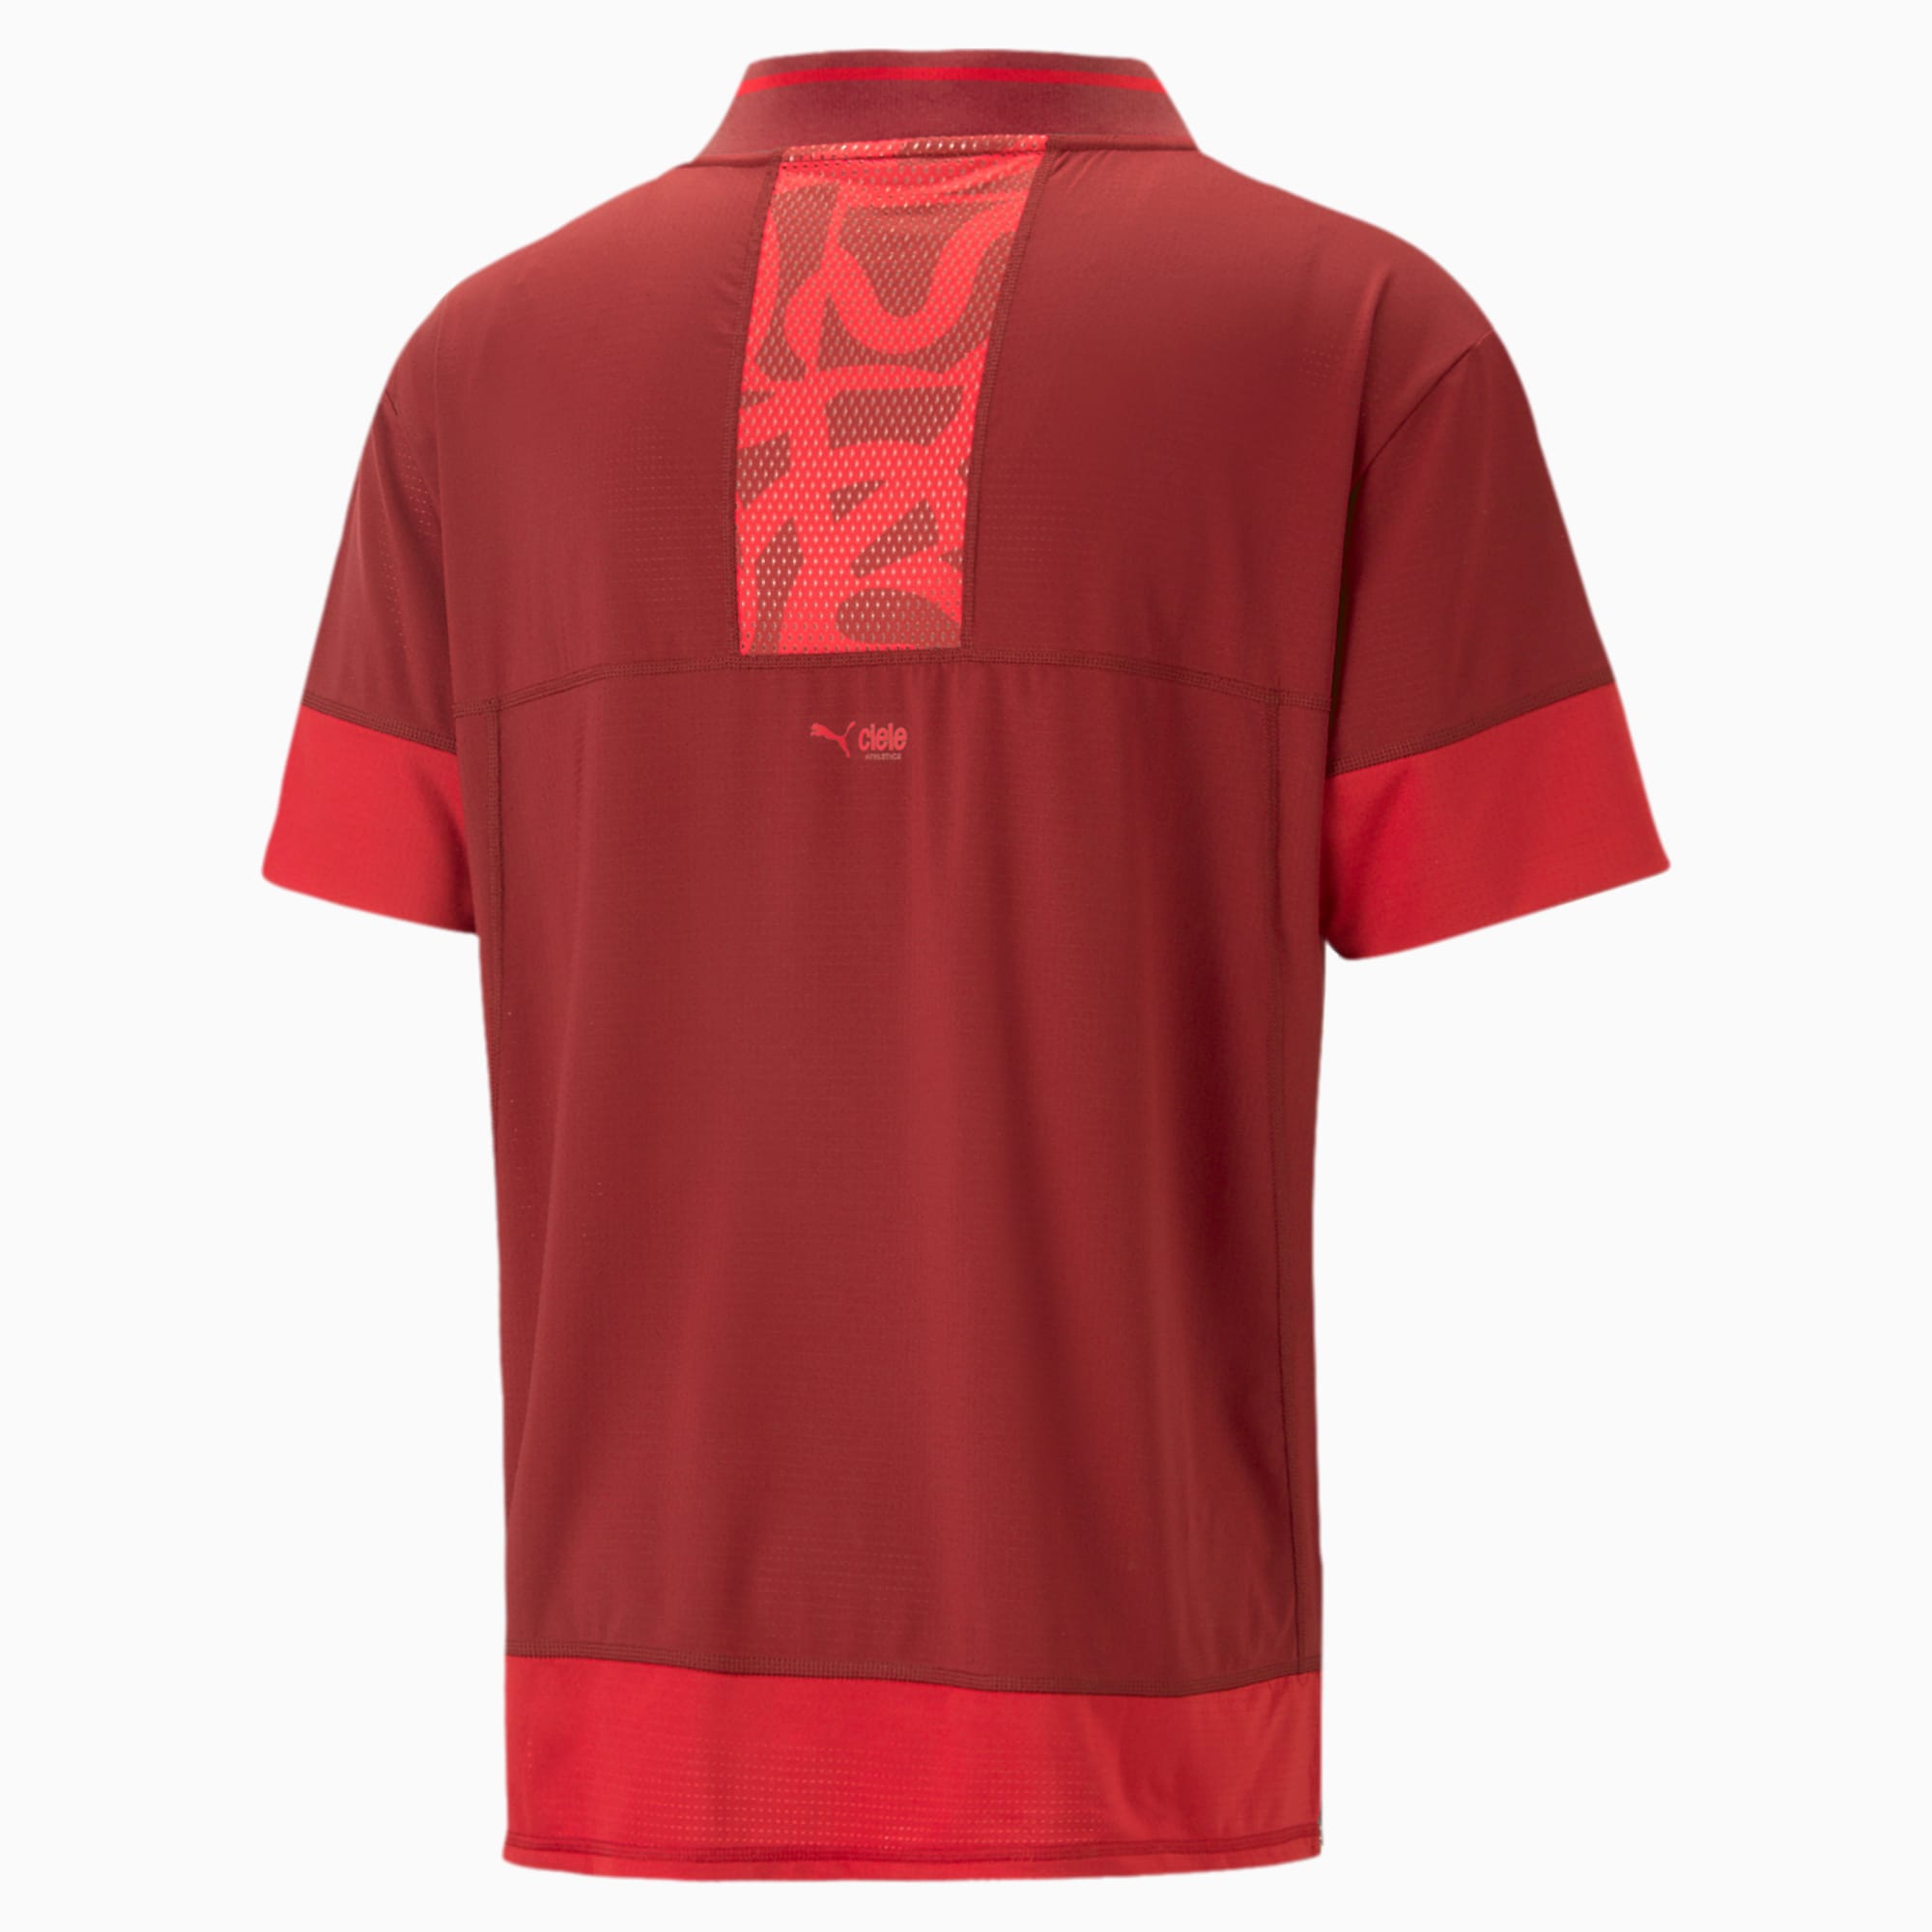 ROGELLI RUN SEAMLESS seamless men's running T-shirt 800.271 - fluor